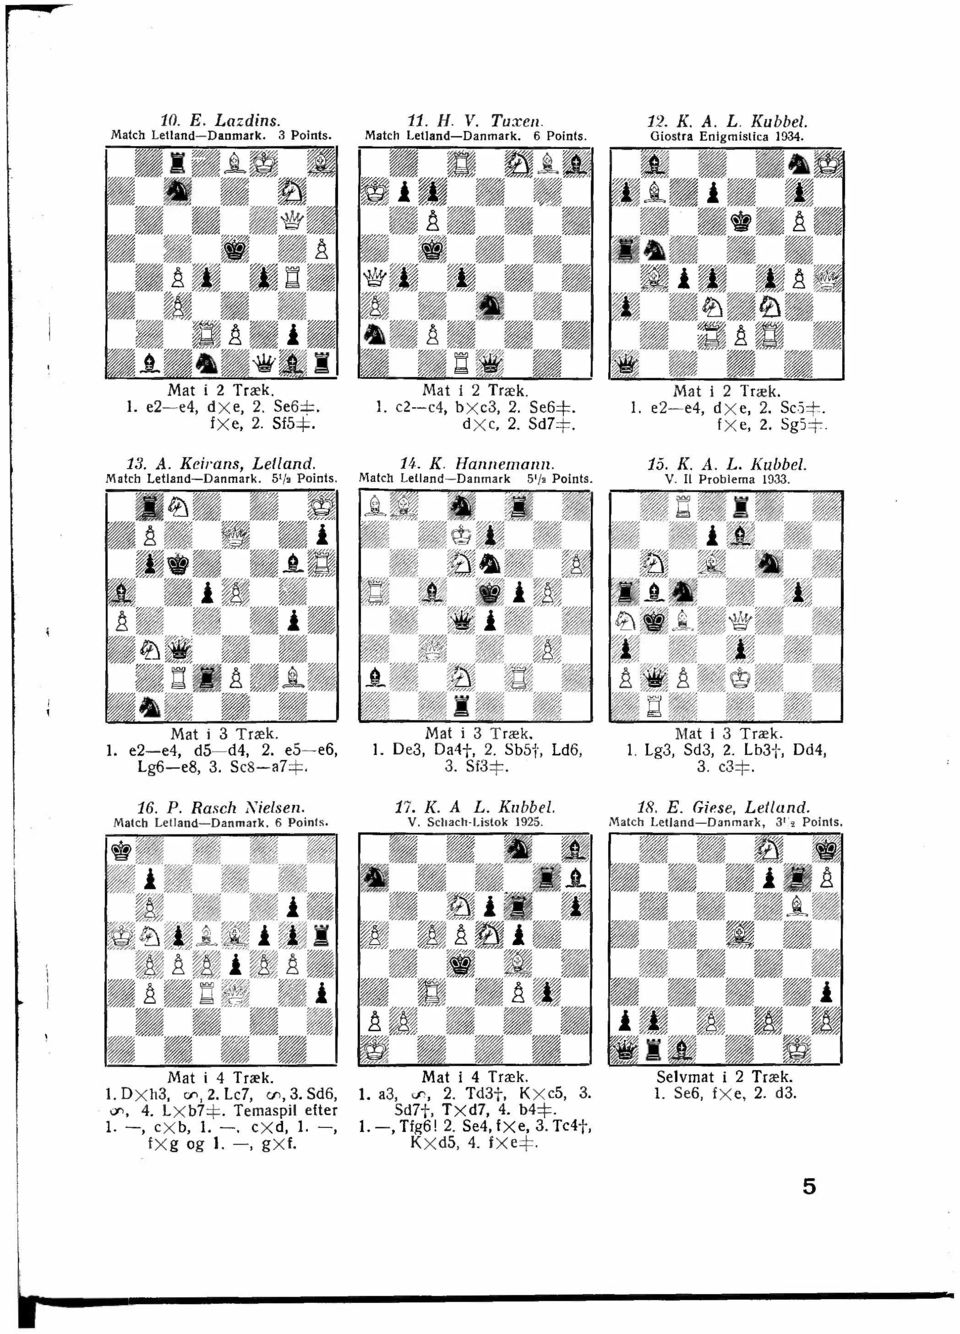 Sc'i::j::. f x e, 2. SgS::j::. 15. K. A. L. Kubbel. V. Il Problema 1933. Mat i 3 Træk. 1. e2-e4, d5-d4, 2. e5-e6, Lg6-e8, 3. Sc8-a7::j::. 16. P. Rase/i Nielsen. Match Letland-Danmark. 6 Poinls.